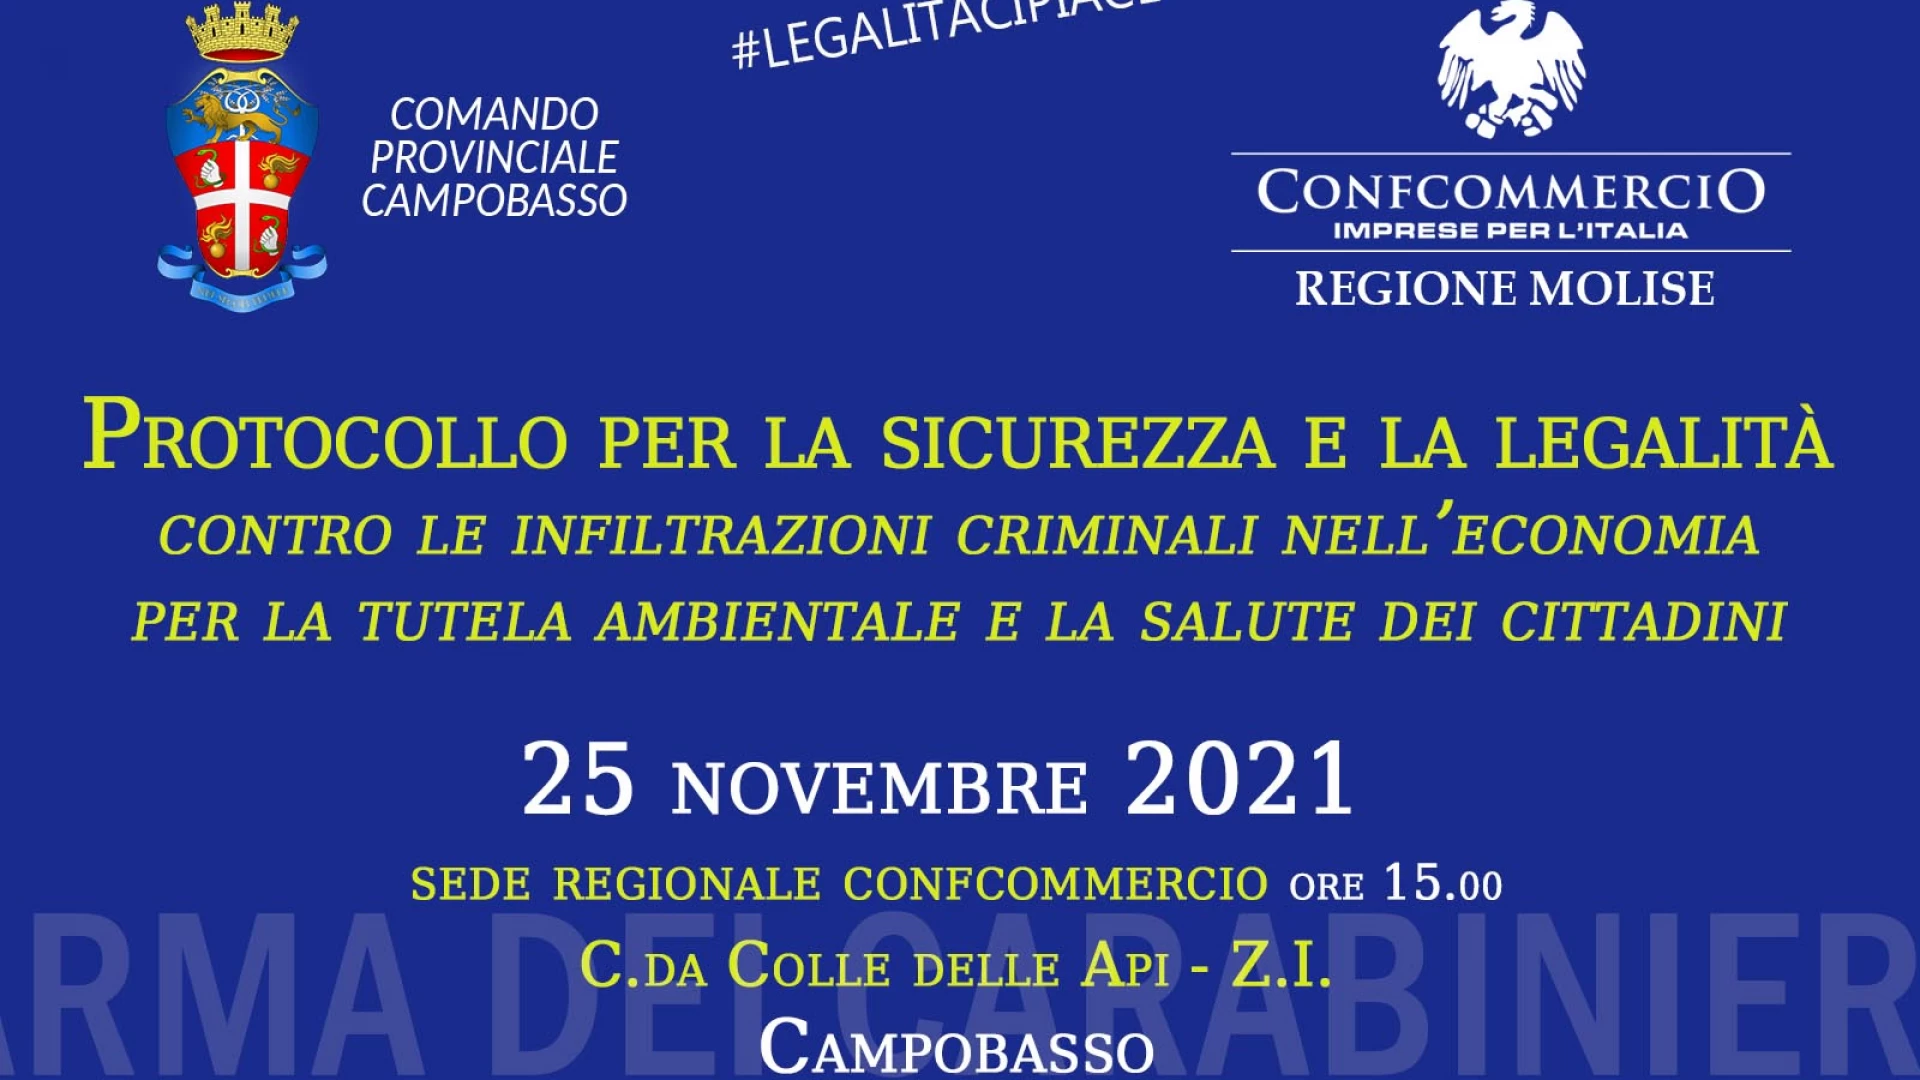 Legalità, protocollo d'intesa tra Confcommercio Molise e Arma dei Carabinieri - Invito